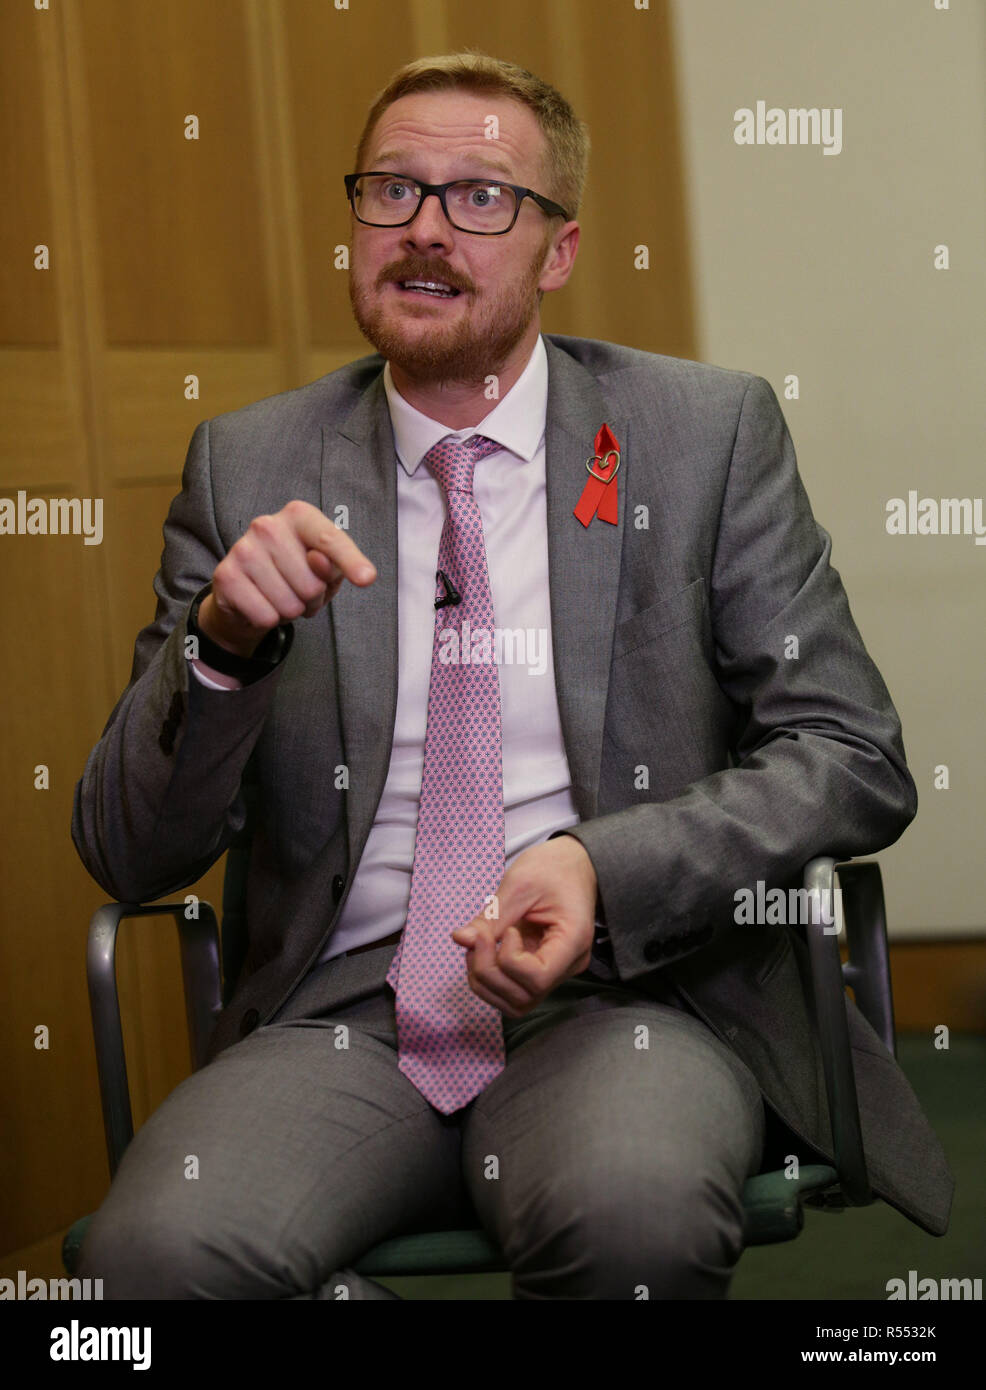 Lloyd Russell-Moyle, Labour MP für Brighton Kemptown, während eines Interviews mit der Presse Verein Portcullis House, London, wo er über seine HIV-positiven Status sprach. Stockfoto